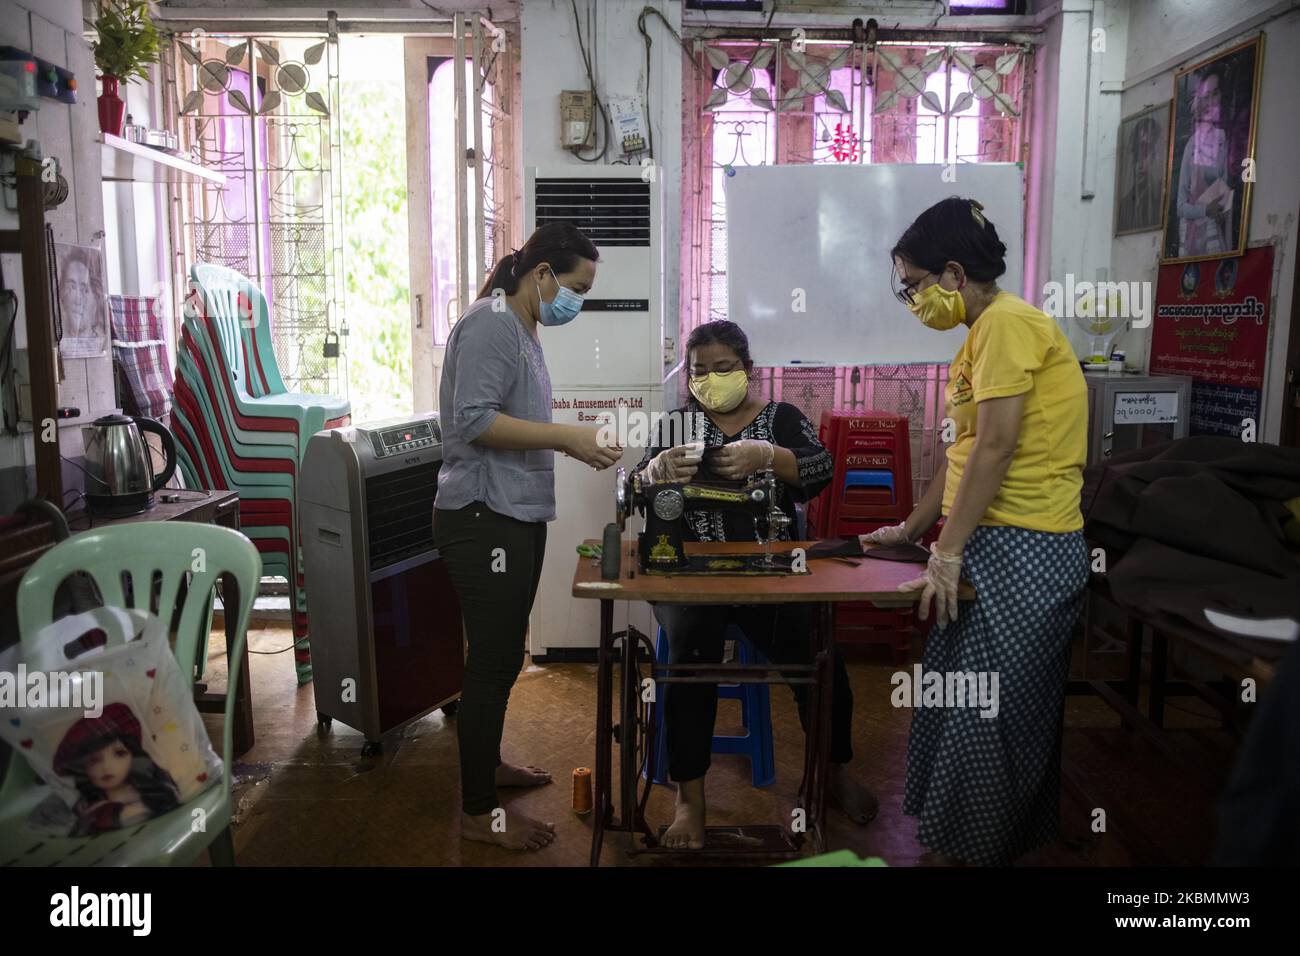 I volontari cucono una maschera riutilizzabile/lavabile fatta a mano in uno degli uffici della rete di formazione della Lega Nazionale per la democrazia (NLD) a Yangon, Myanmar, il 21 aprile 2020. Queste maschere saranno distribuite gratuitamente a tutti come misura preventiva contro il coronavirus COVID-19. Myanmar ha riportato un totale di 119 casi confermati con 5 morti all'aprile 20. (Foto di Shwe Paw Mya Tin/NurPhoto) Foto Stock